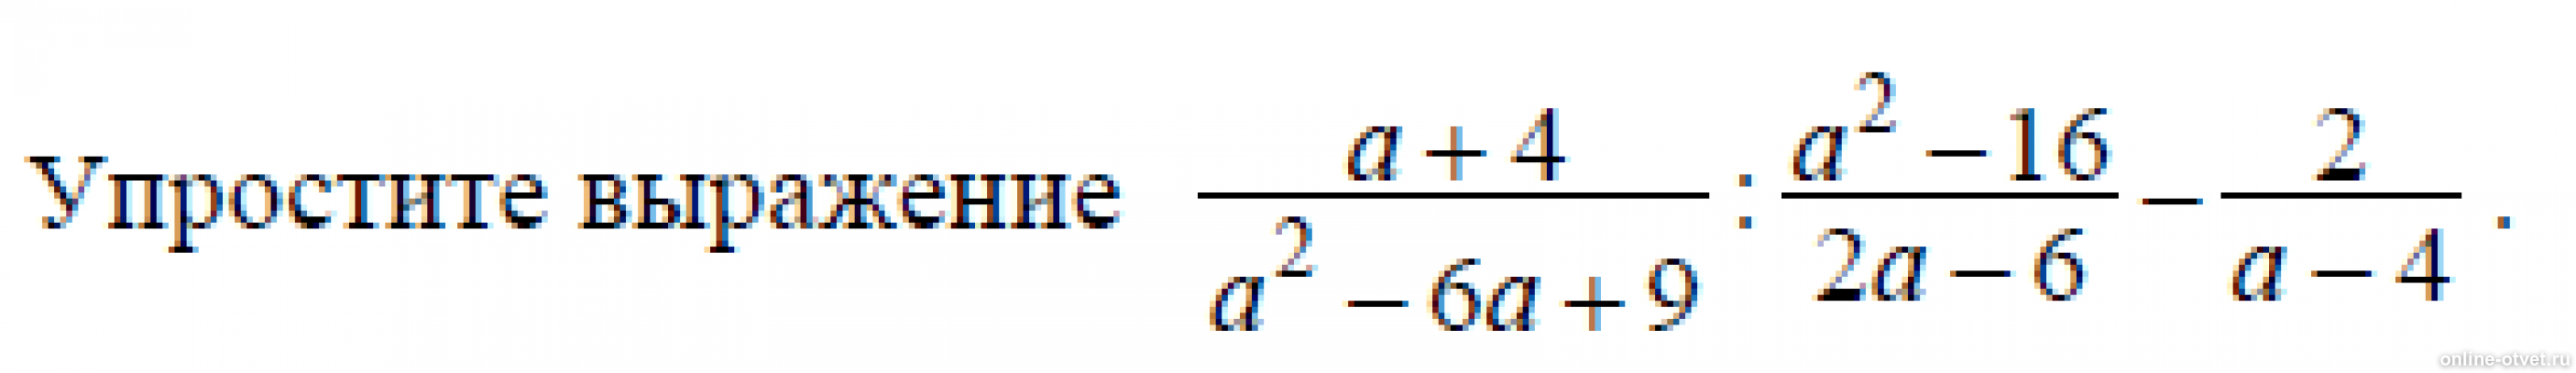 Упростите выражение х 3 y 2. A-4/A^2+4+16 упростить выражение. Упростите выражения (a-8)^2. Упростите выражения а+2 а-3-4-а а+4. Упростите выражение 4a/a^2-4 * a+2/2a.